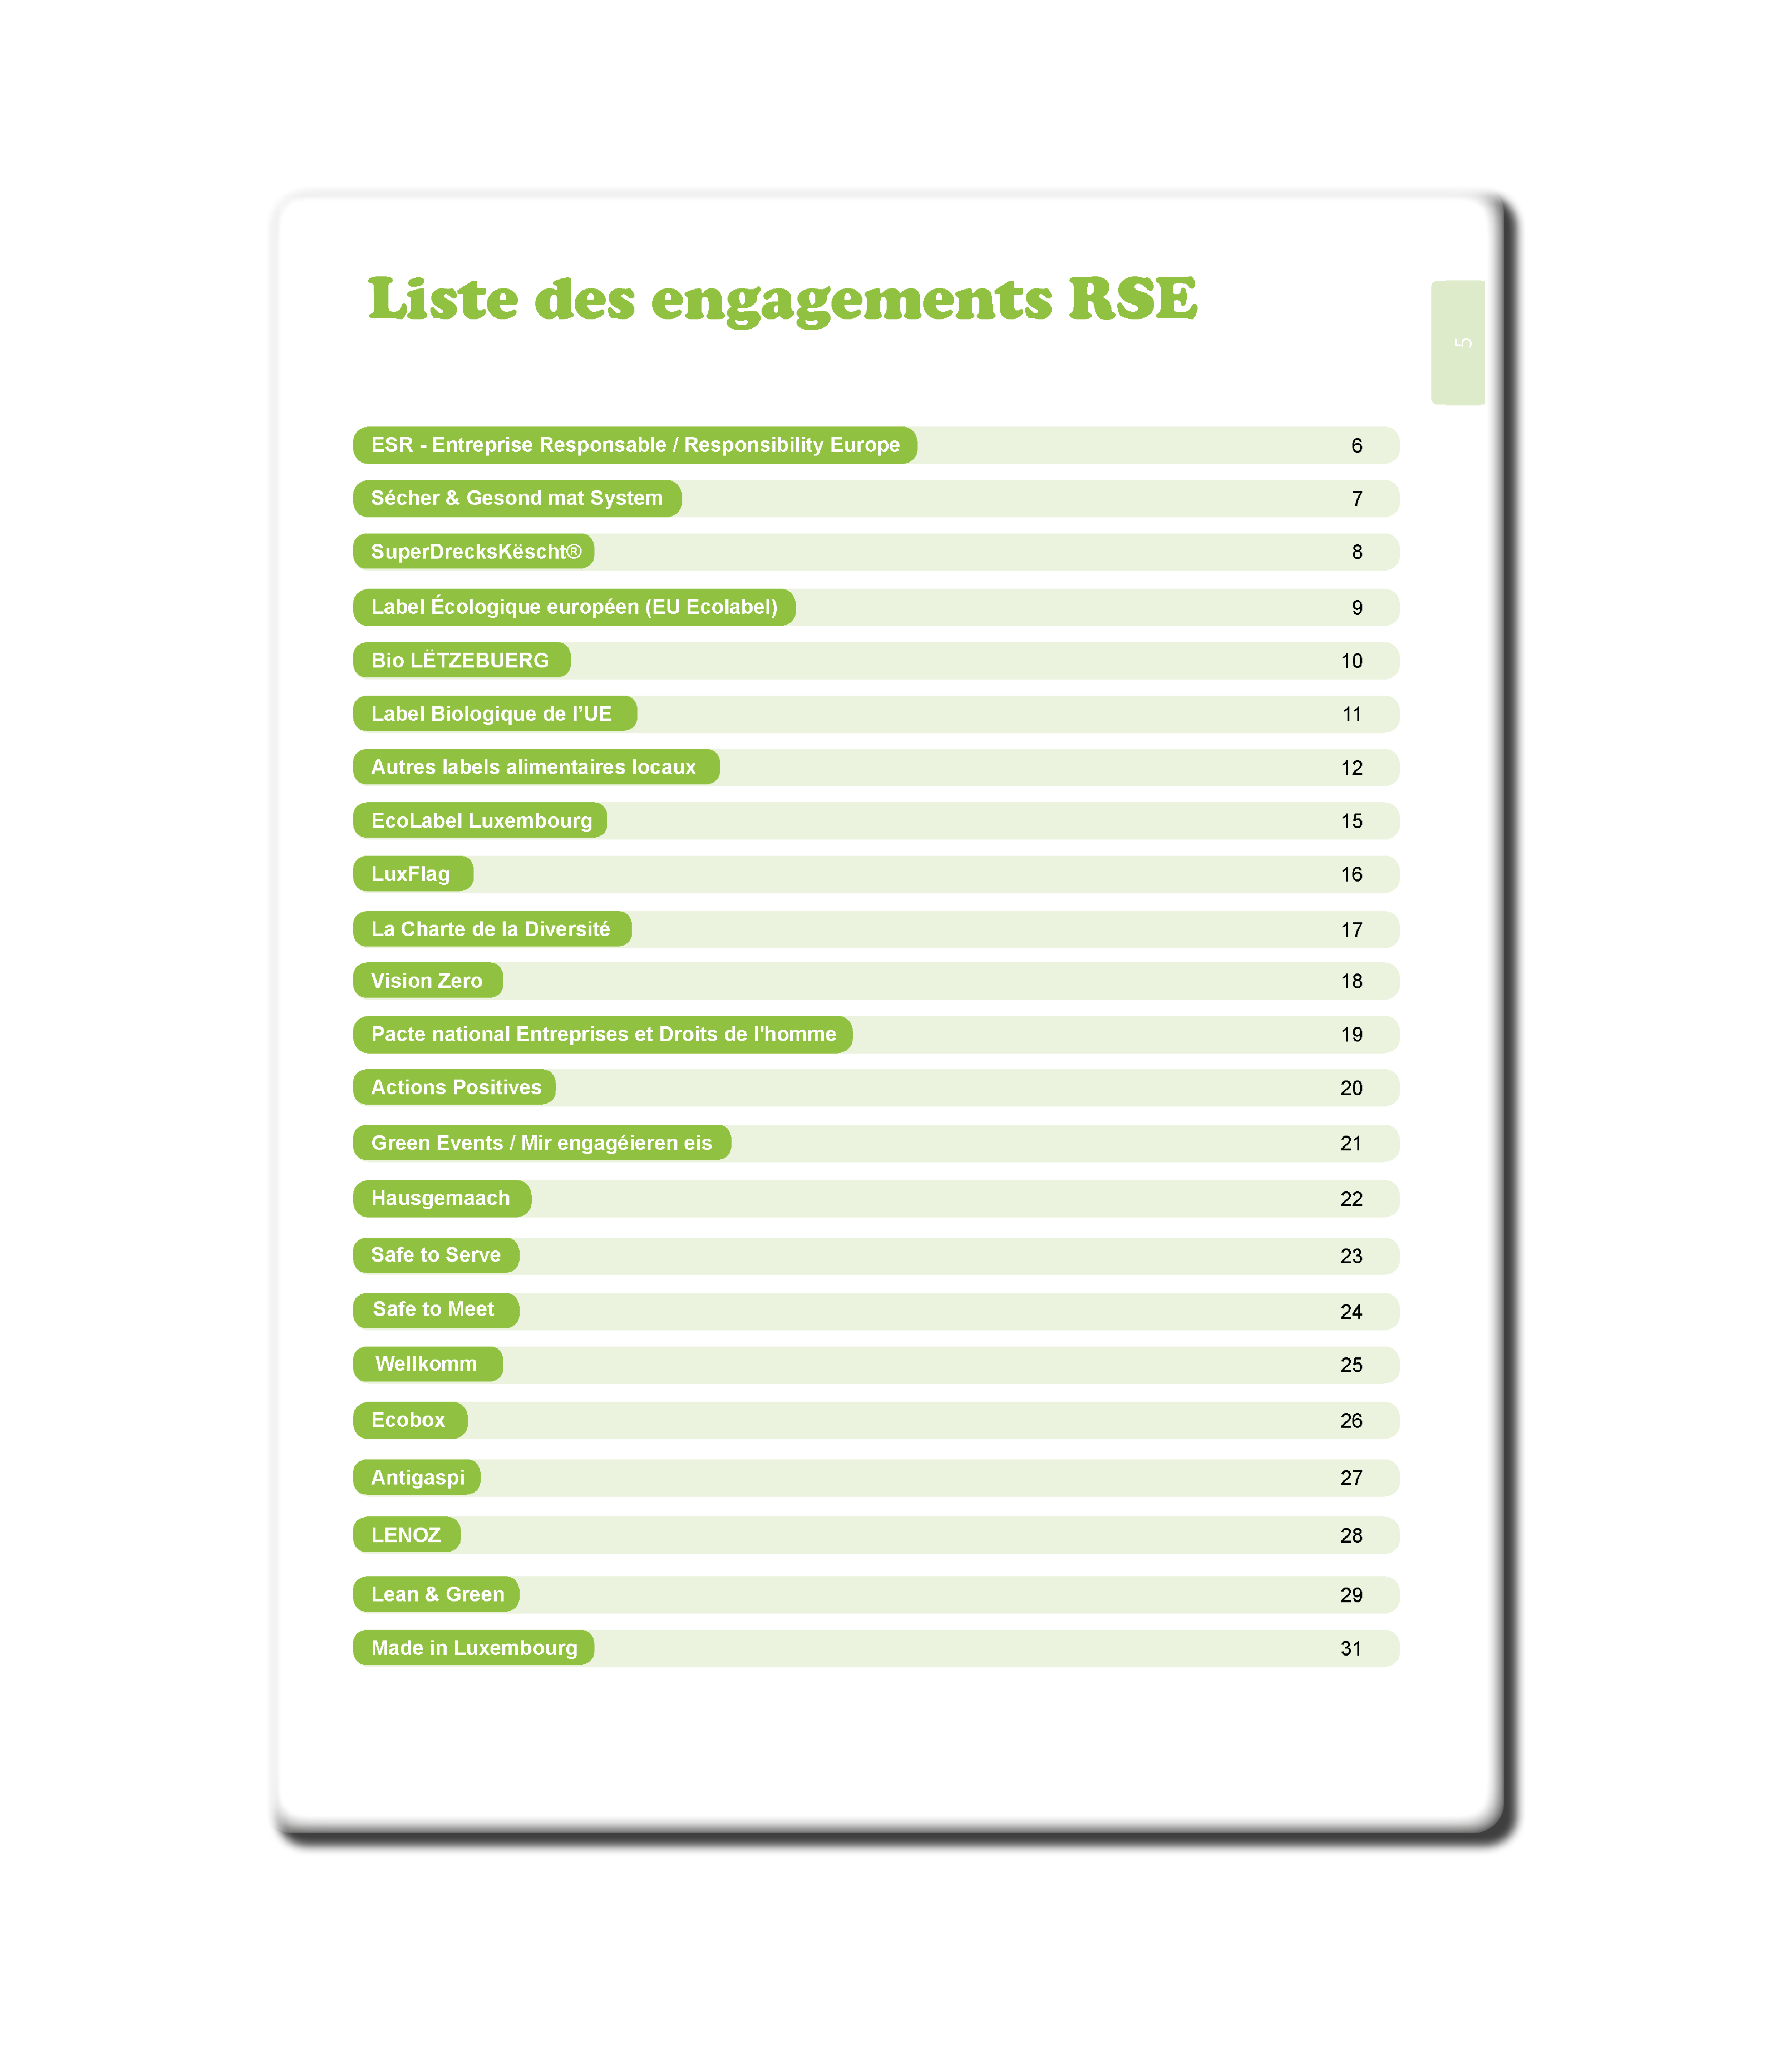 Liste des engagements RSE 1 - Resources